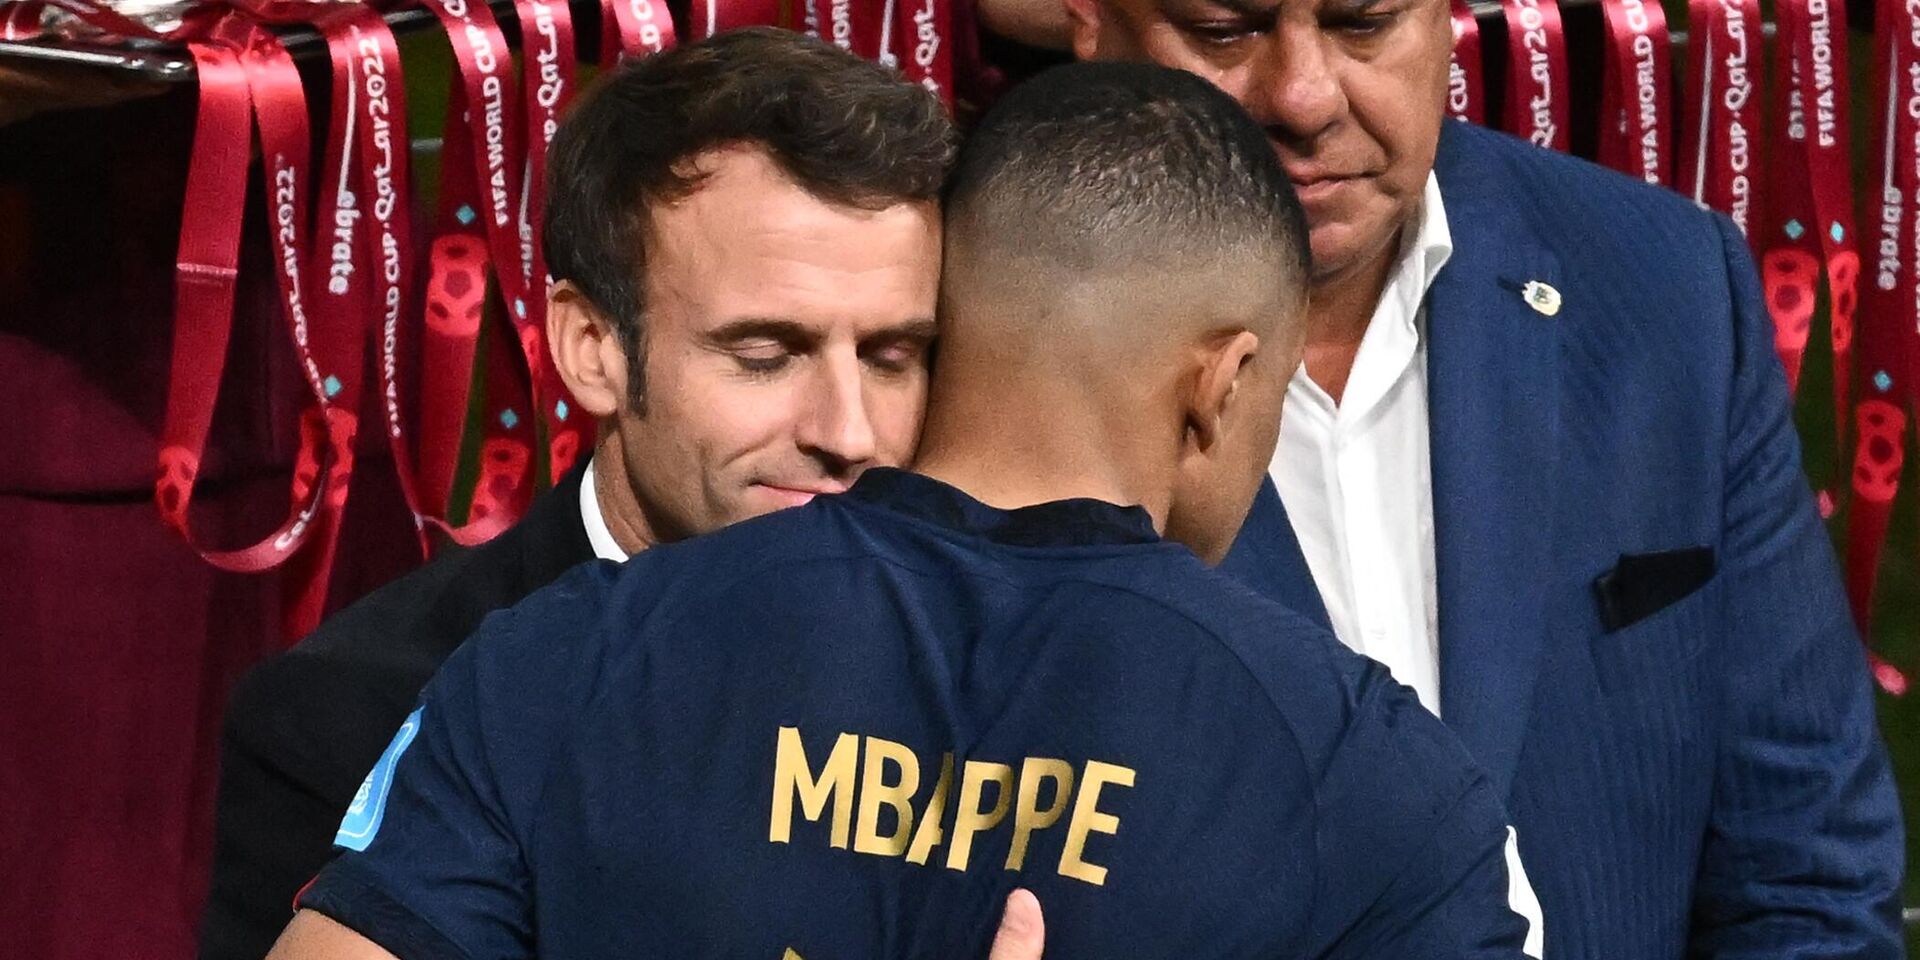 Президент Франции Эммануэль Макрон обнимает форварда сборной Франции Килиана Мбаппе после матча в Катаре. 18 декабря 2022 года - ИноСМИ, 1920, 23.12.2022